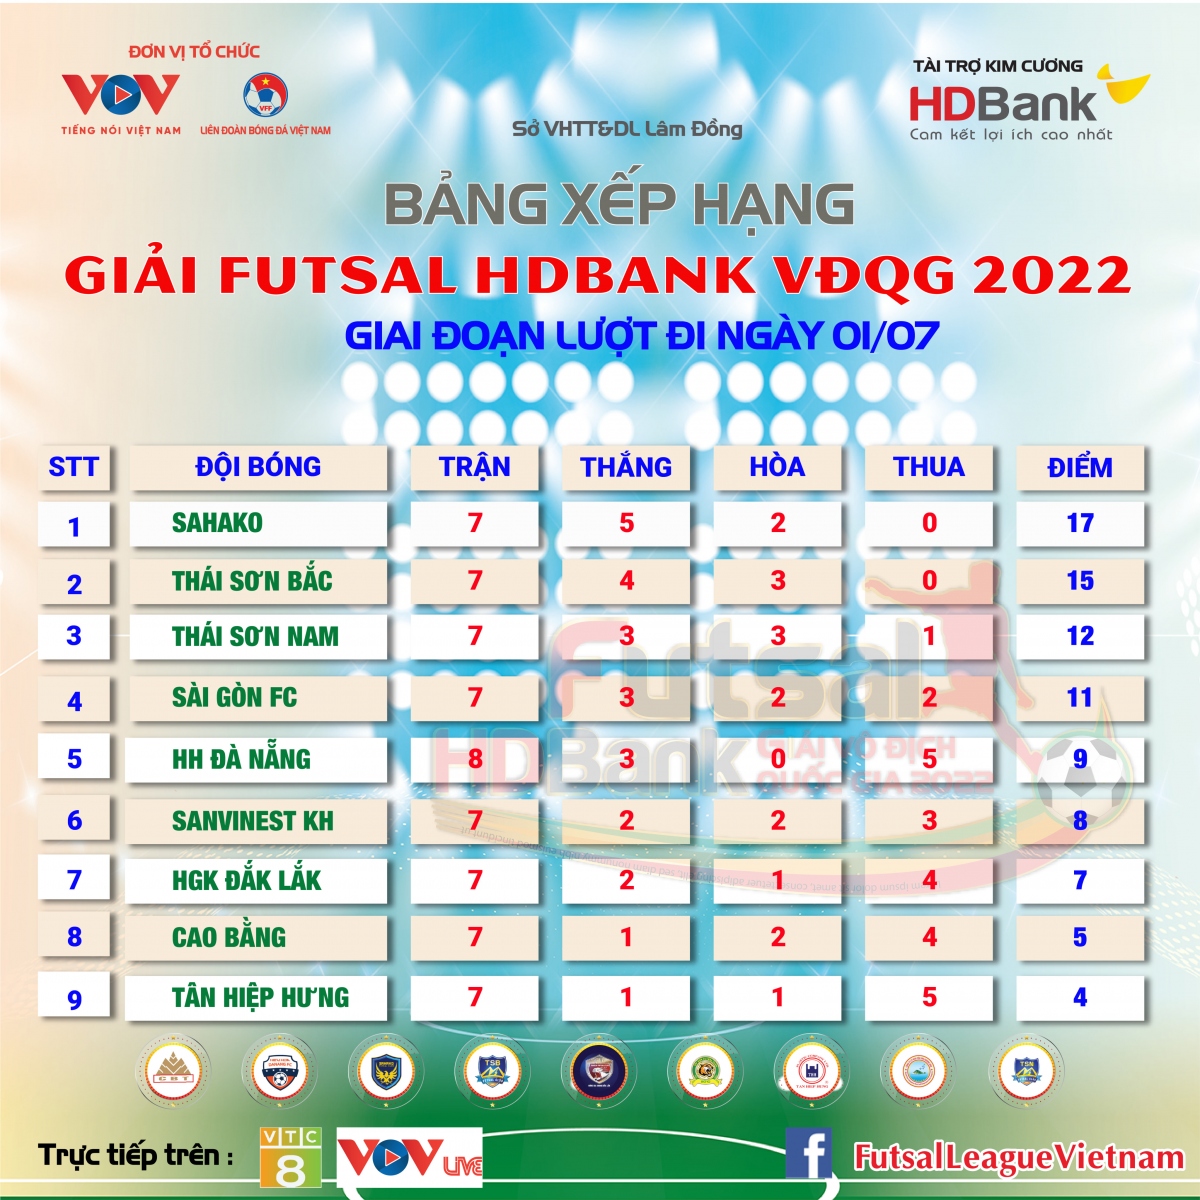 Bảng xếp hạng giải Futsal HDBank VĐQG 2022 mới nhất: Sahako lấy lại ngôi đầu